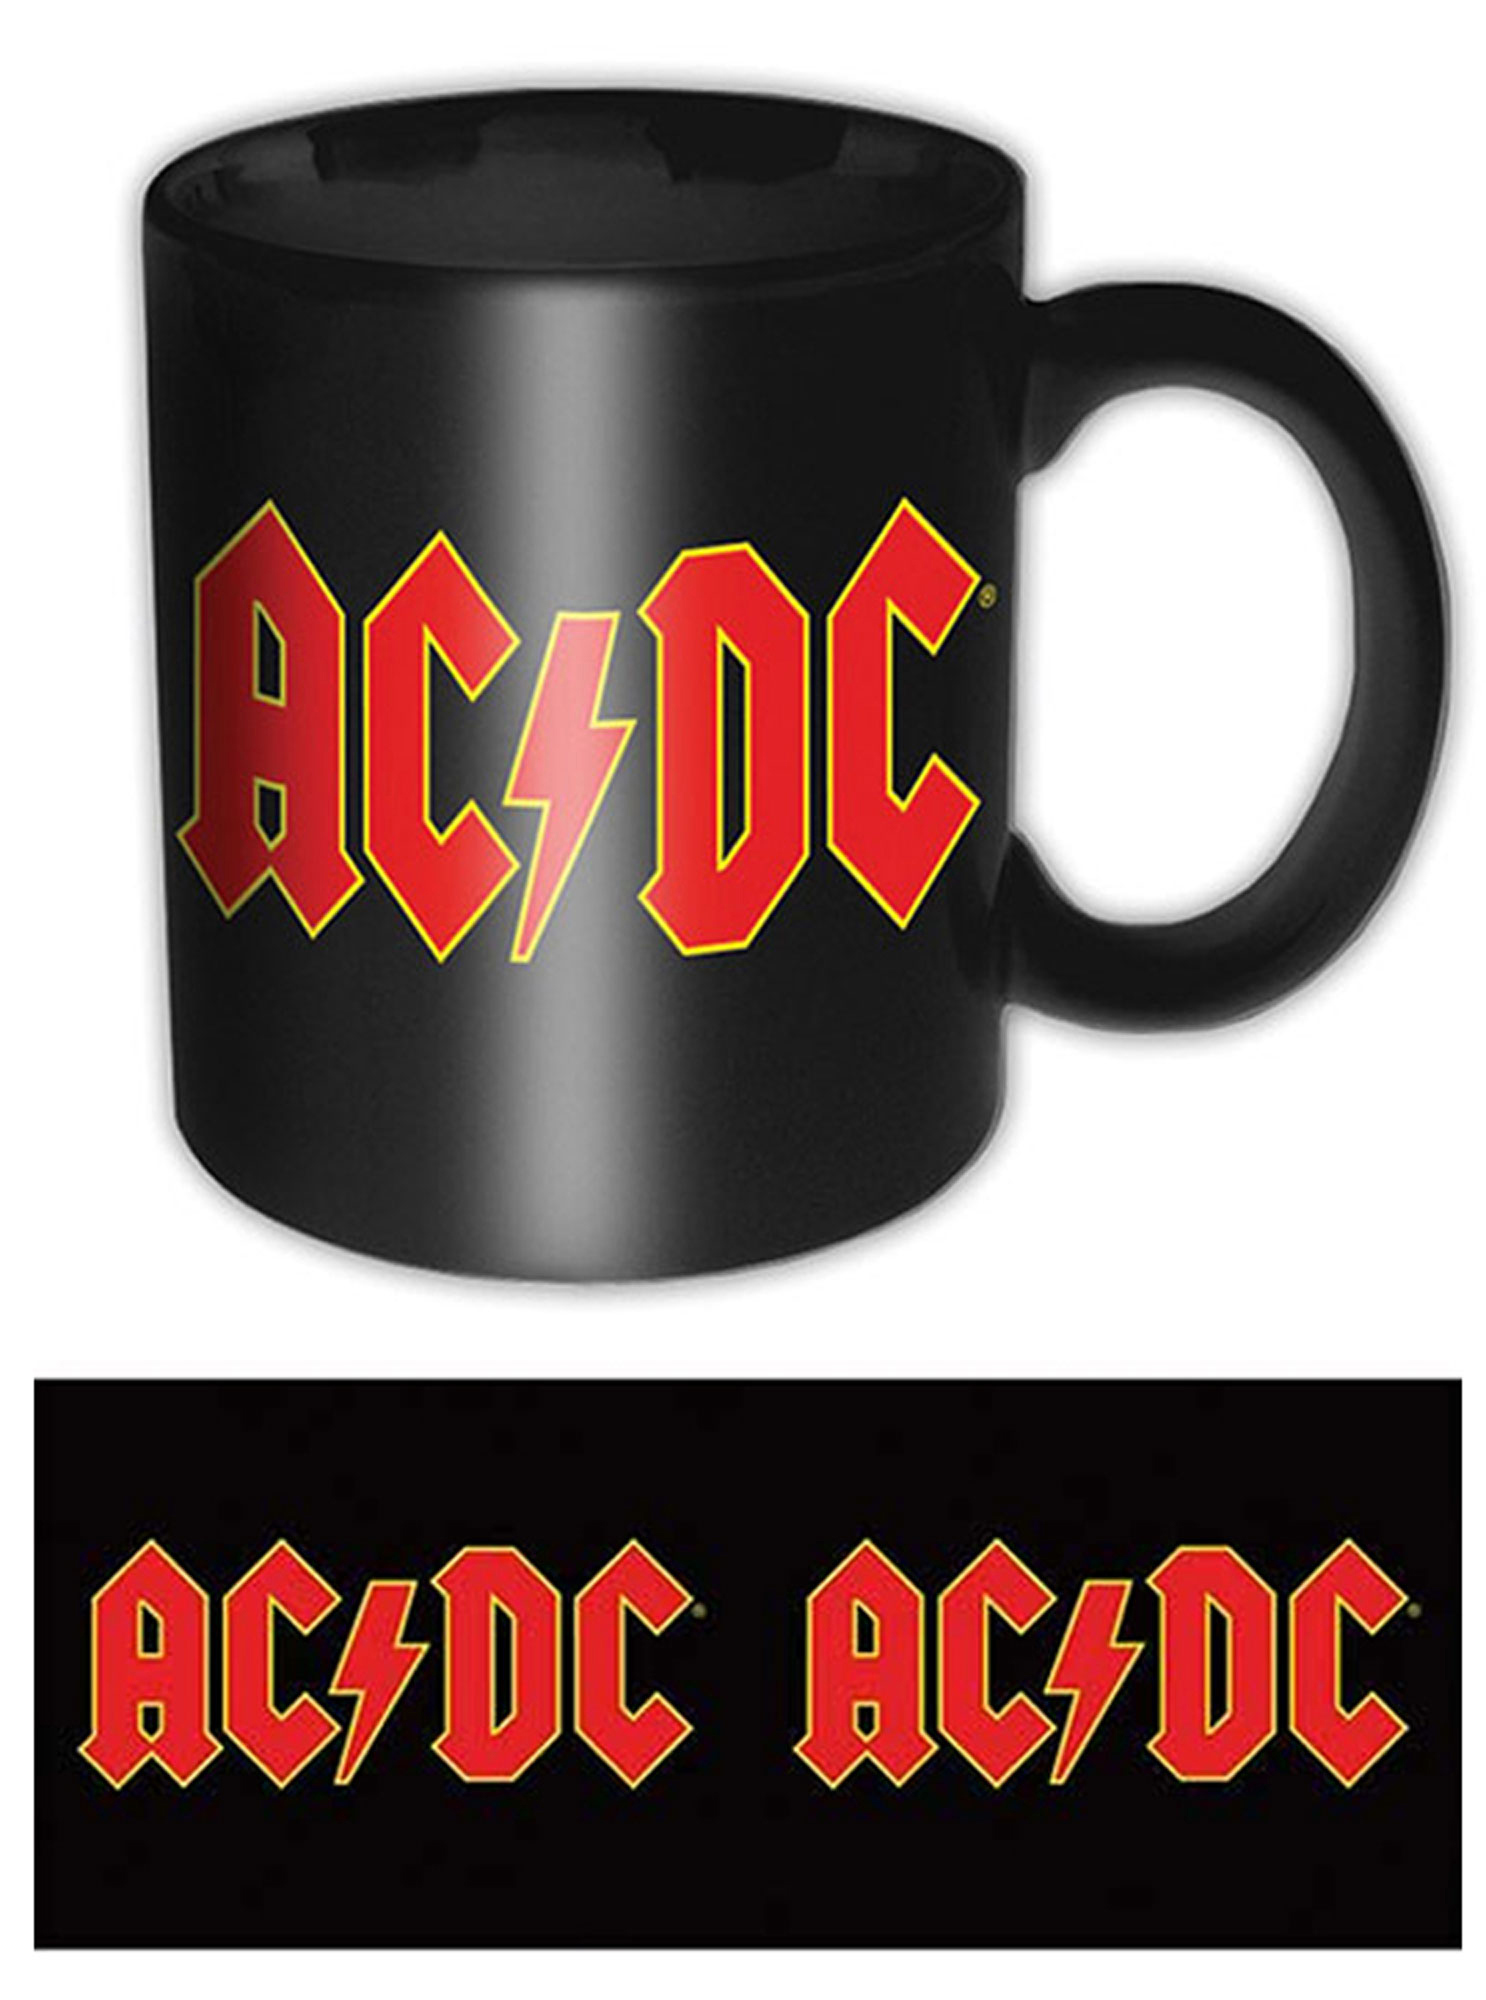 EMPIRE AC/DC - Logo - Keramik-Tasse Lizenz Tasse